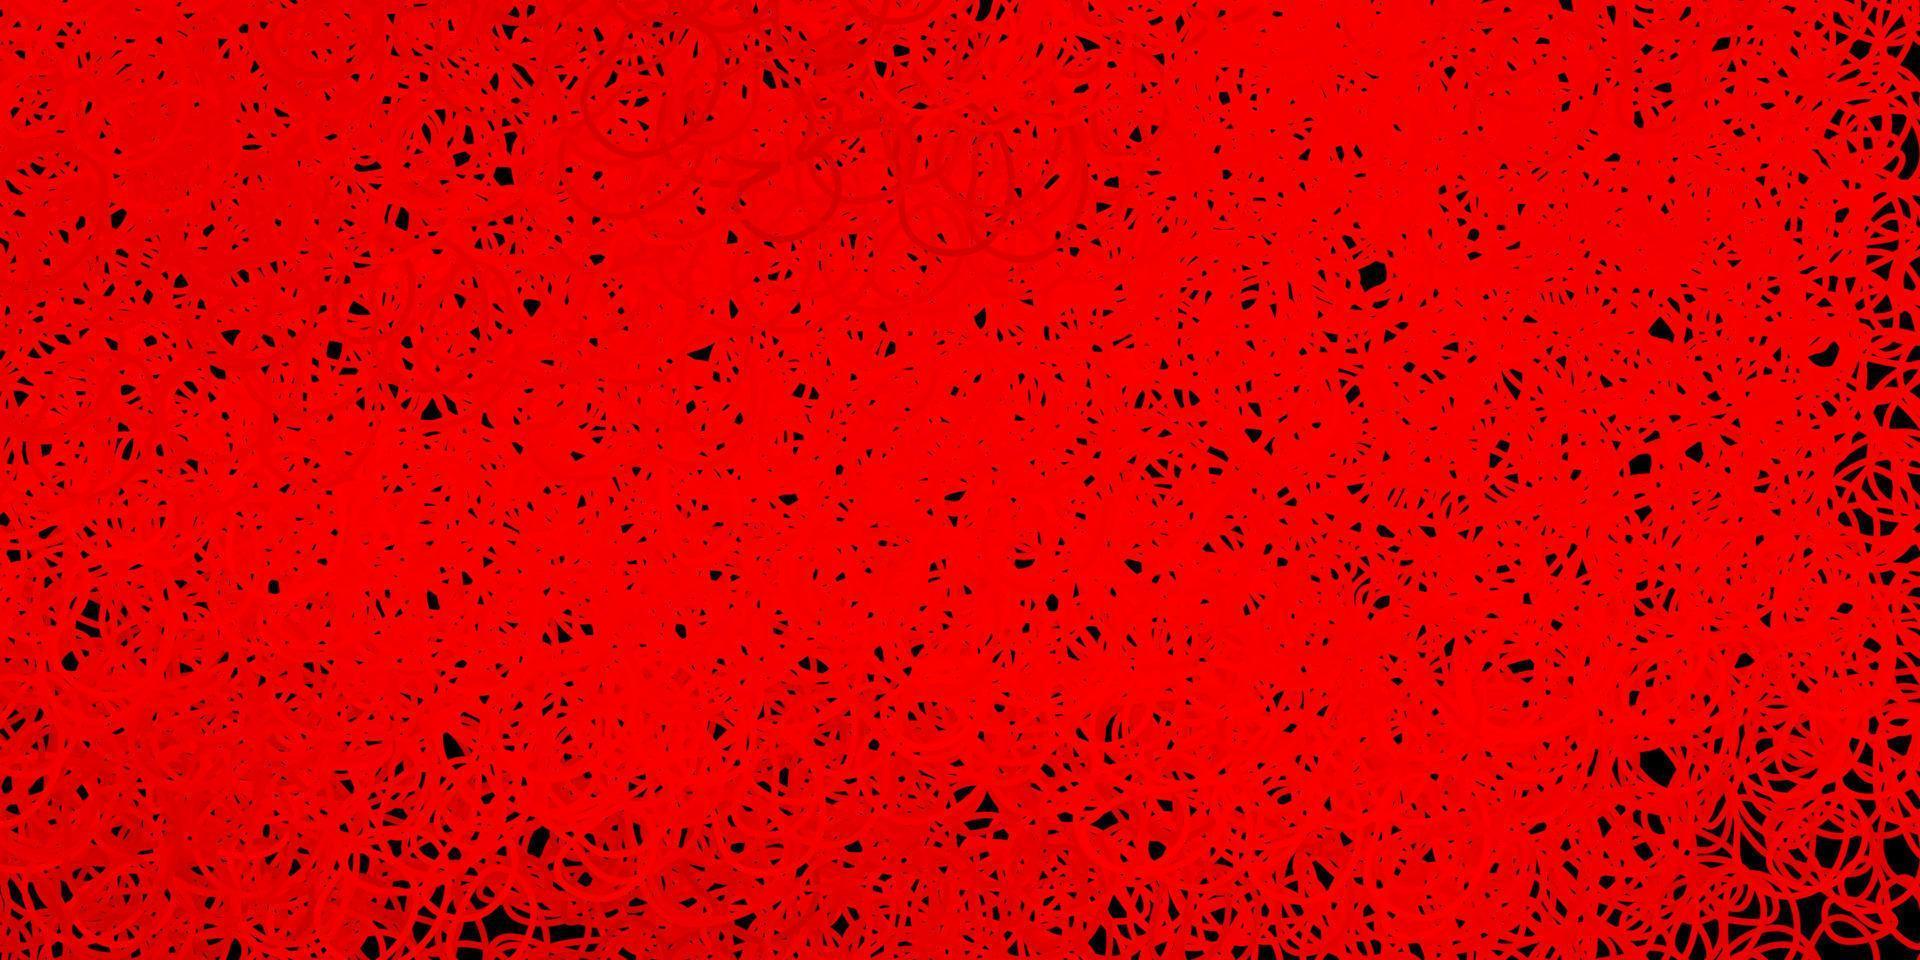 sfondo vettoriale rosso scuro con forme casuali.